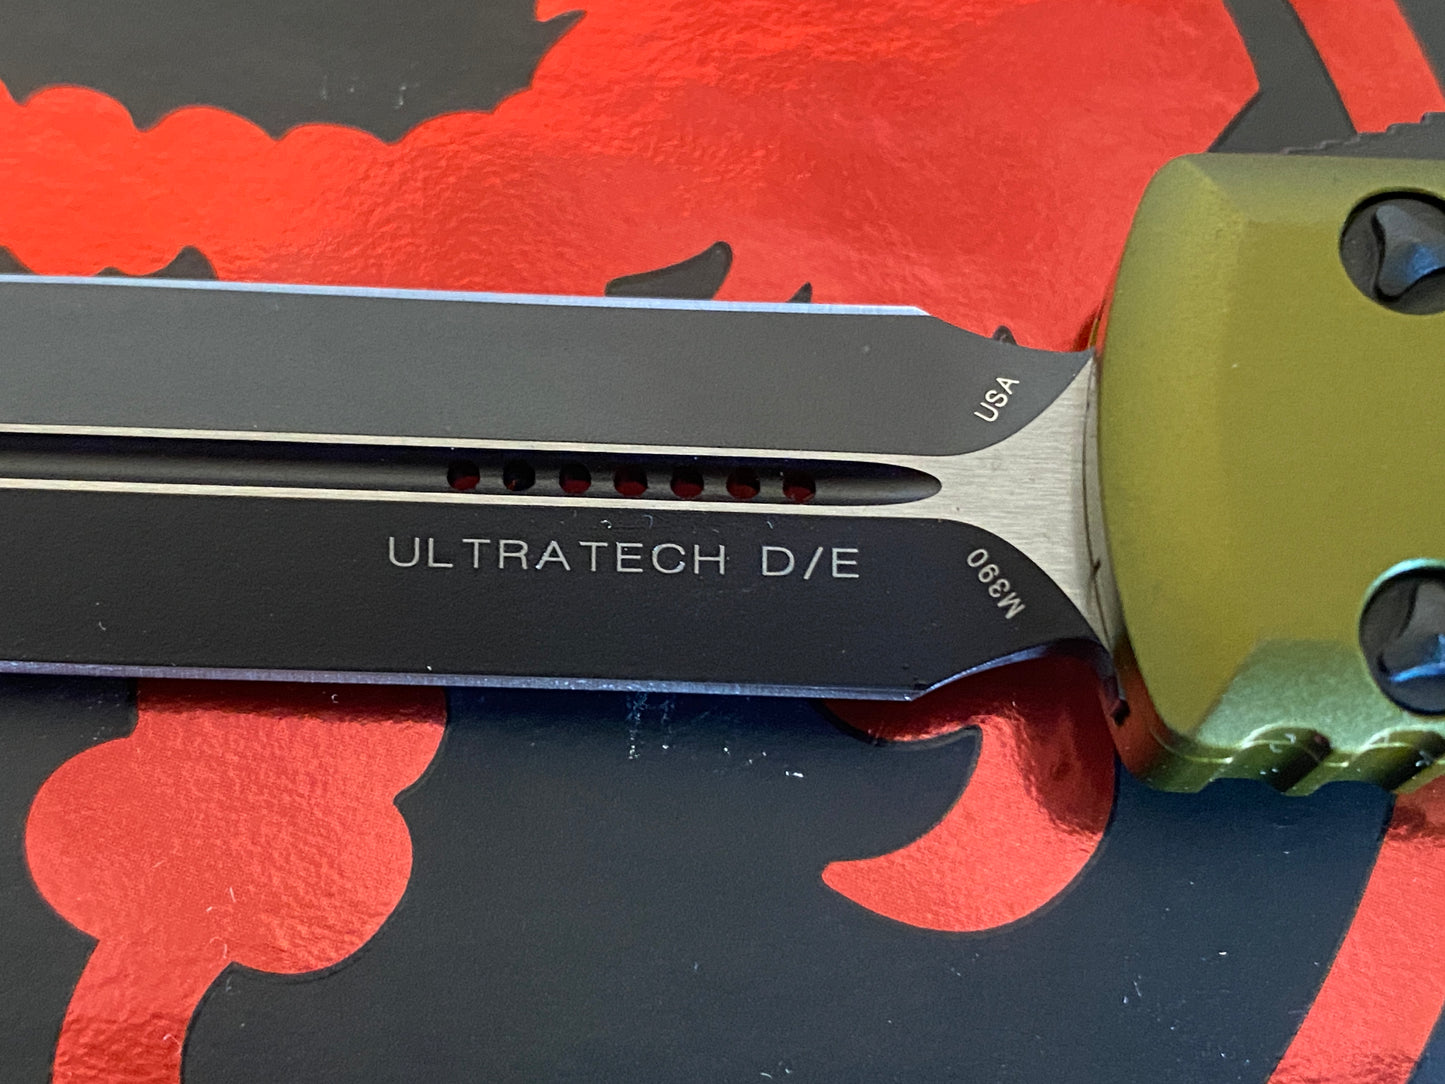 OD Green Microtech Ultratech OTF Automatic Pocket Knife